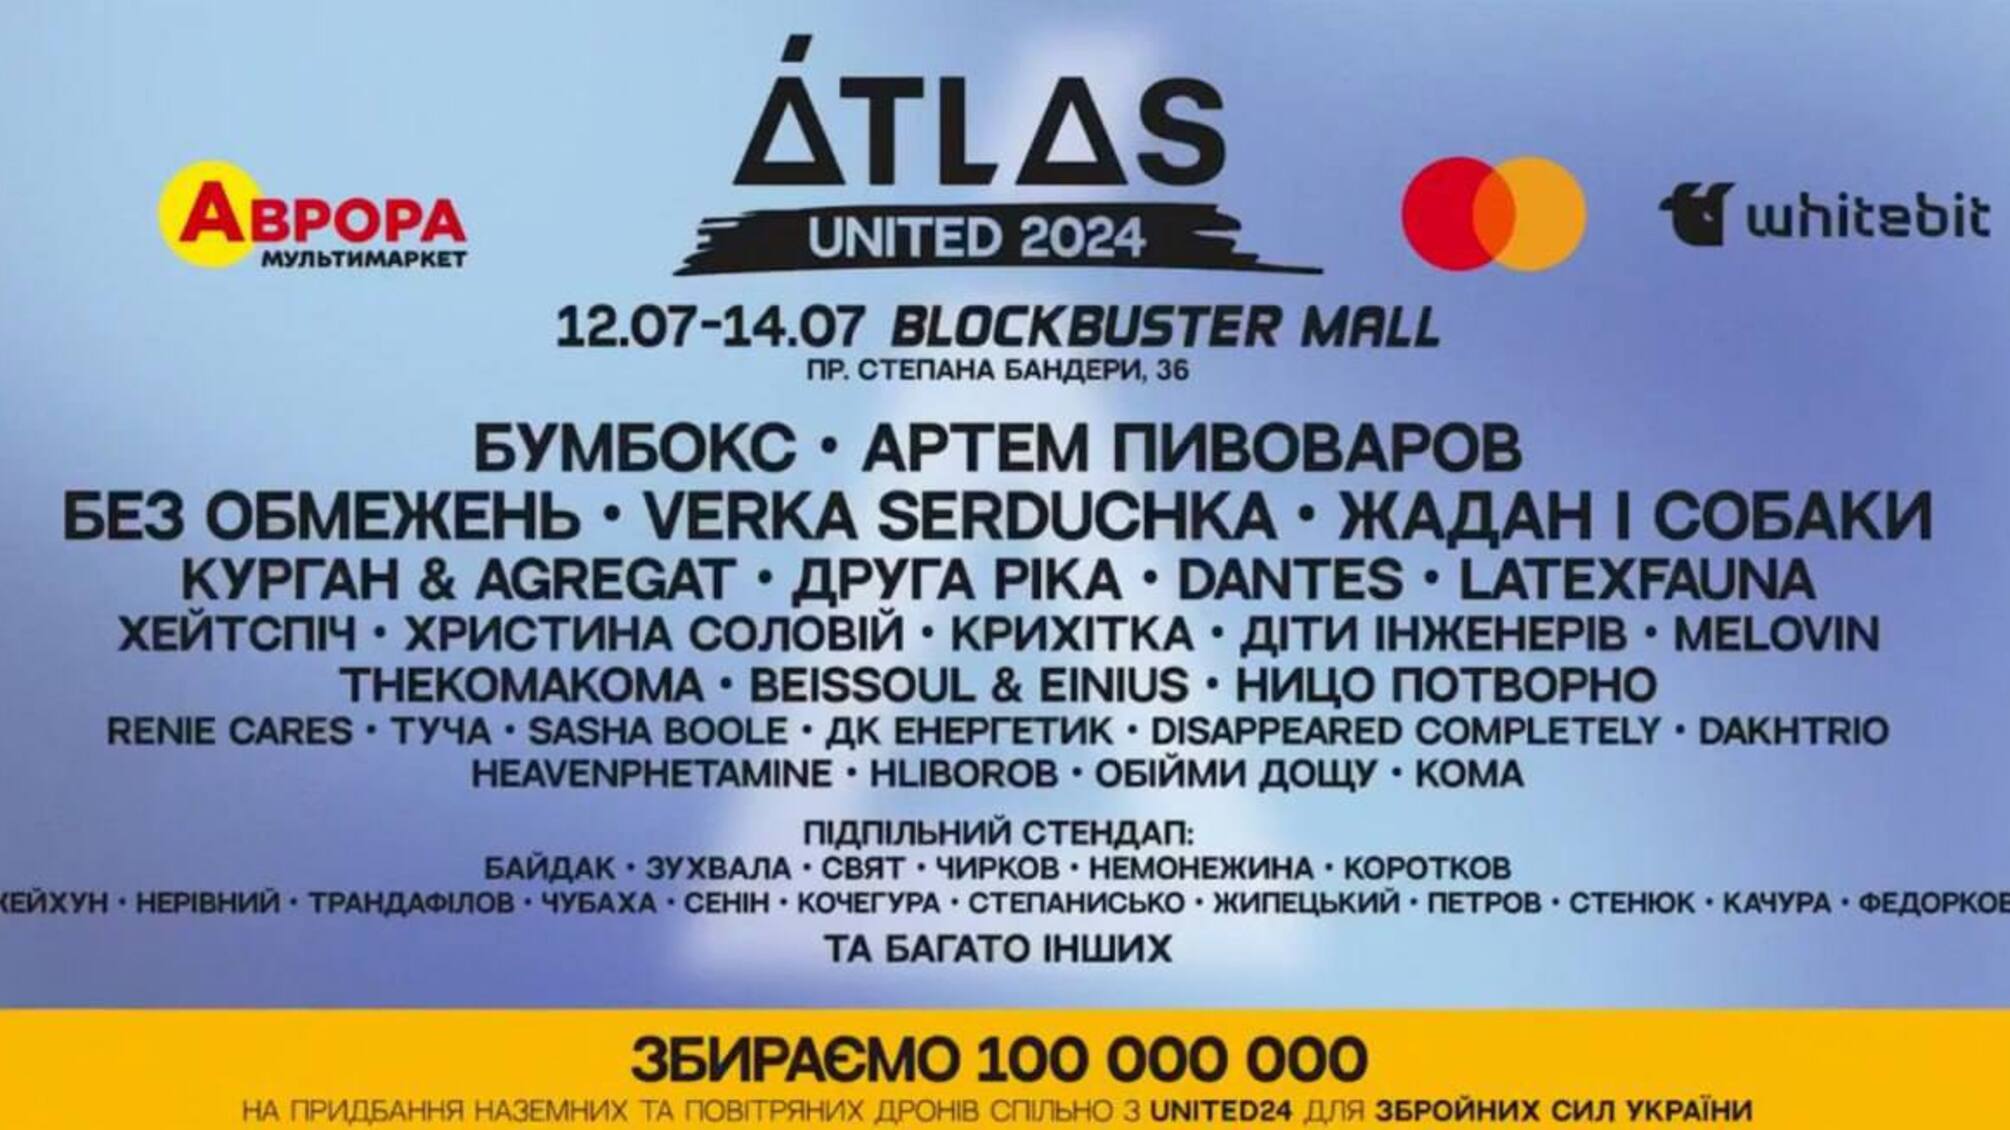 Возвращение Atlas: фестиваль сменяет локацию и собирает 100 миллионов гривен на дроны